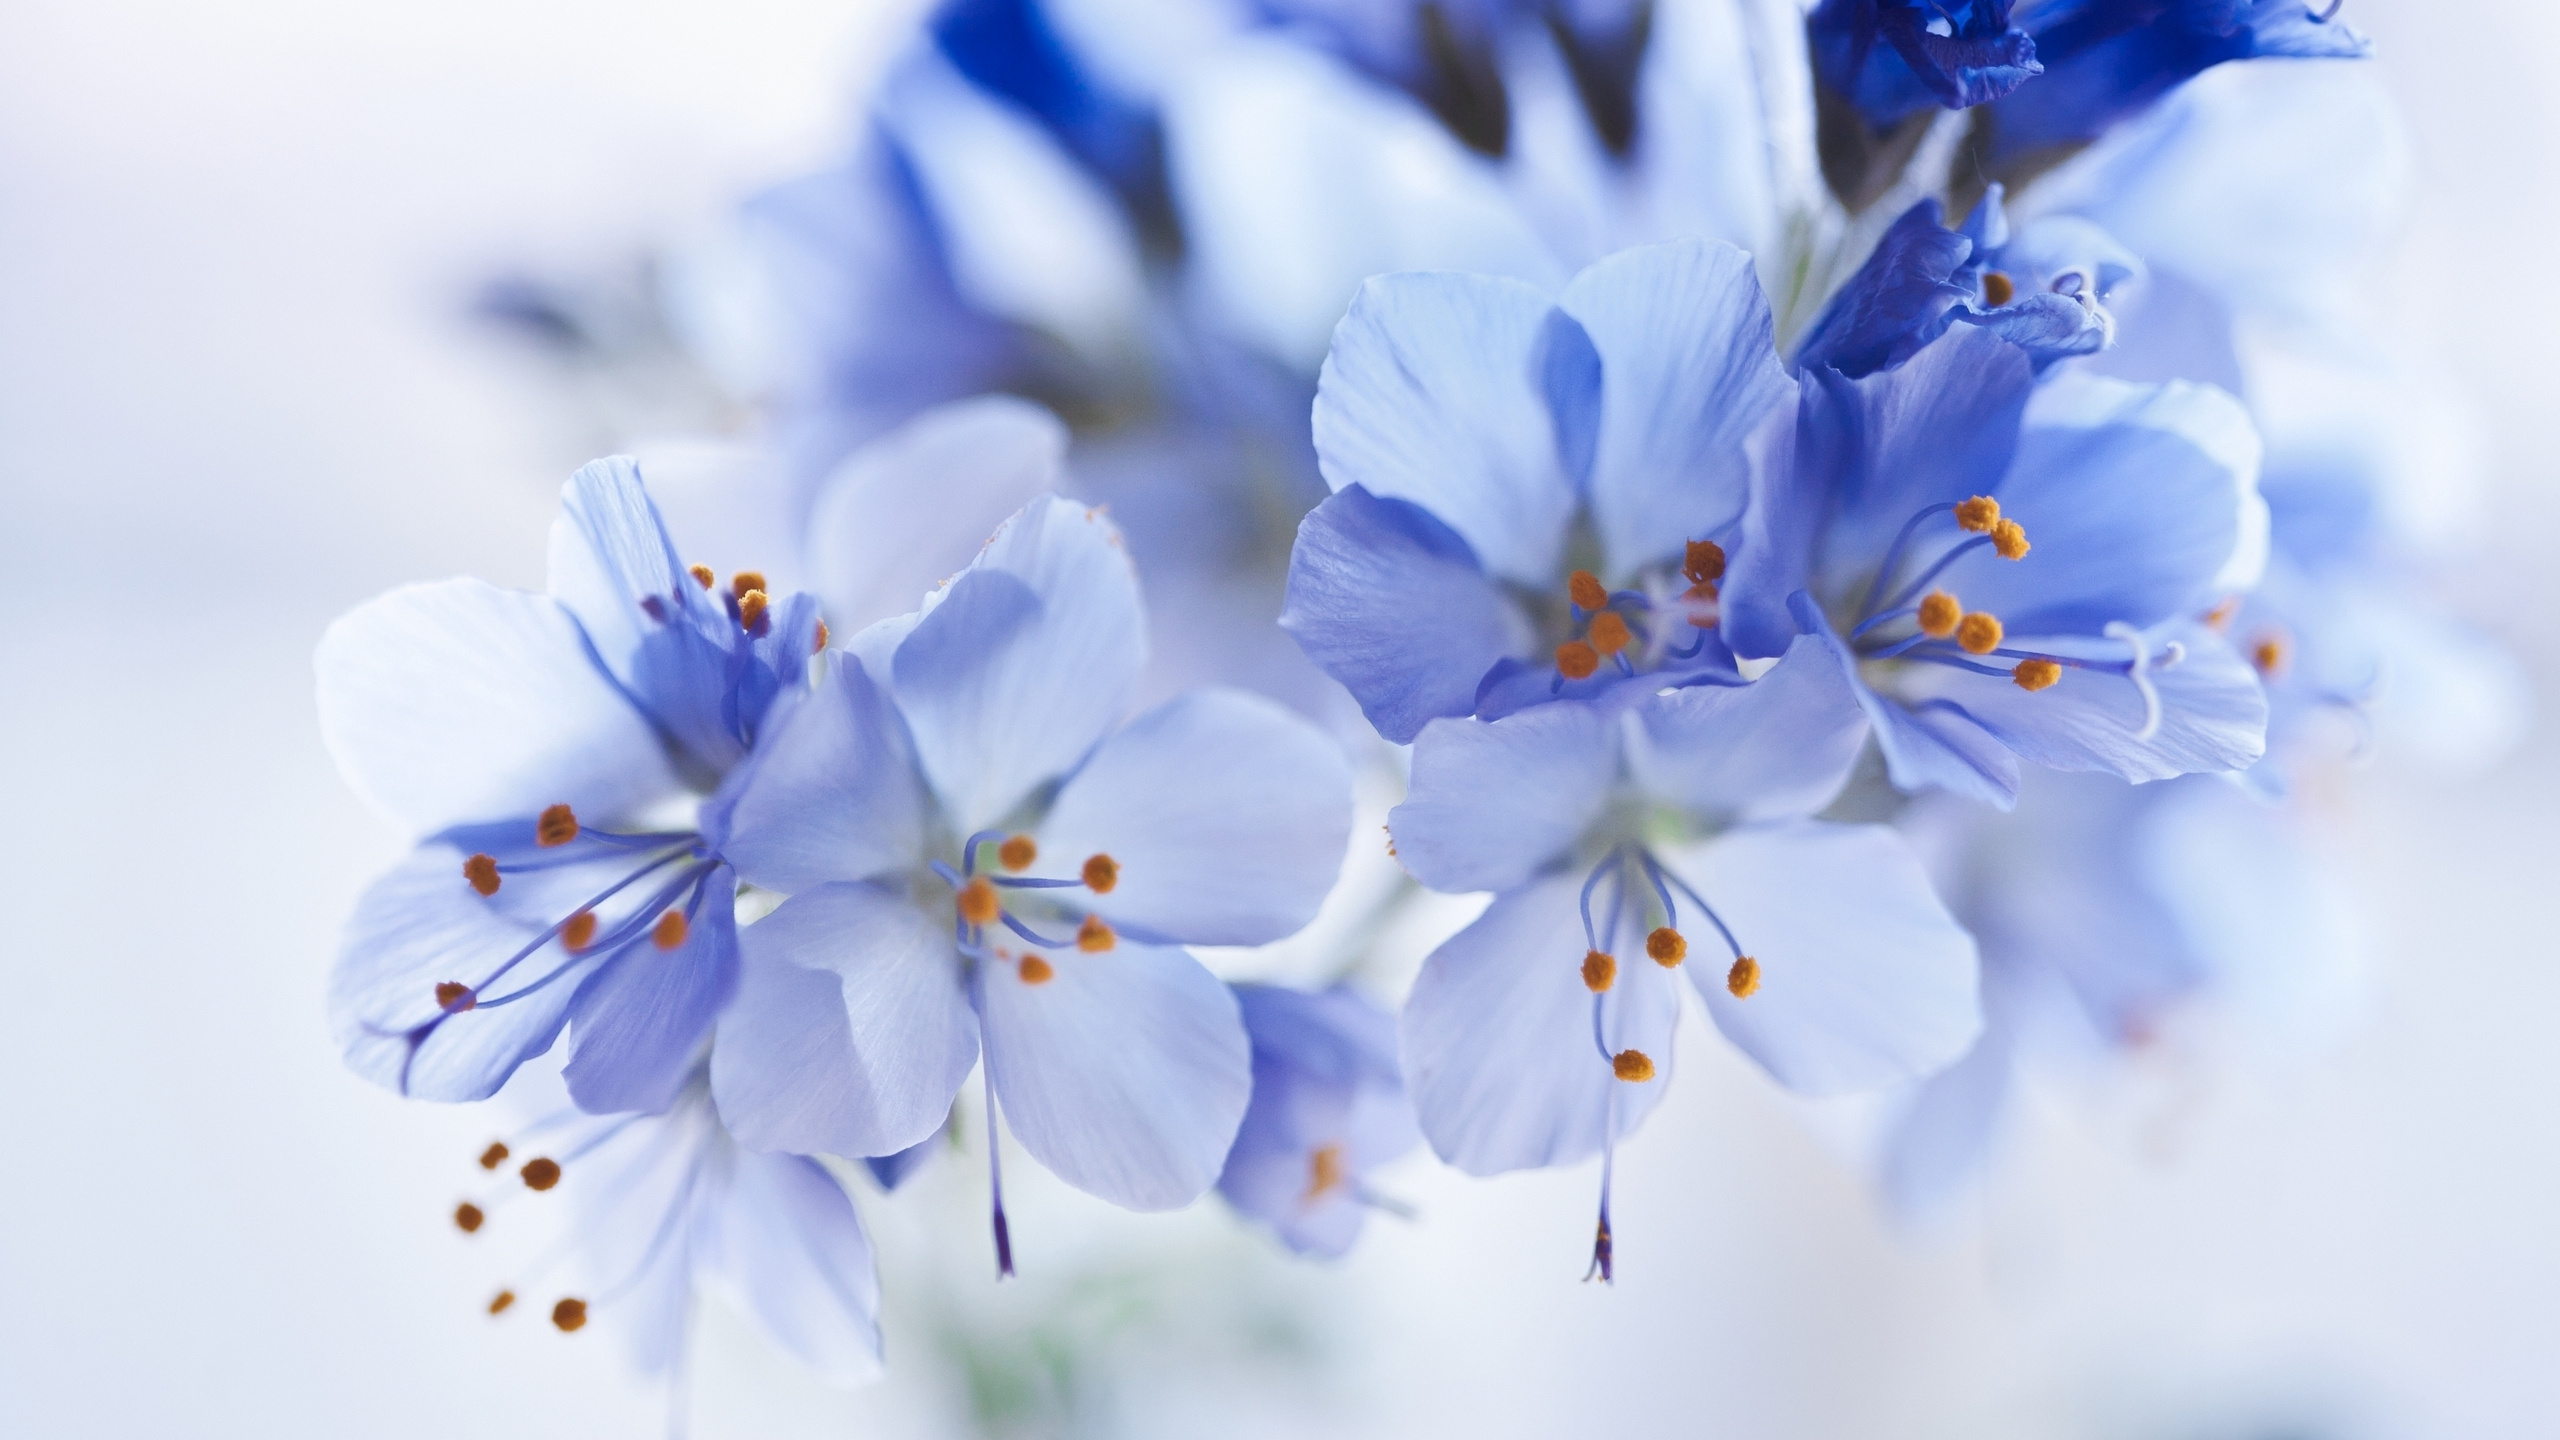 Fleurs Blanches et Bleues Dans L'objectif à Basculement. Wallpaper in 2560x1440 Resolution